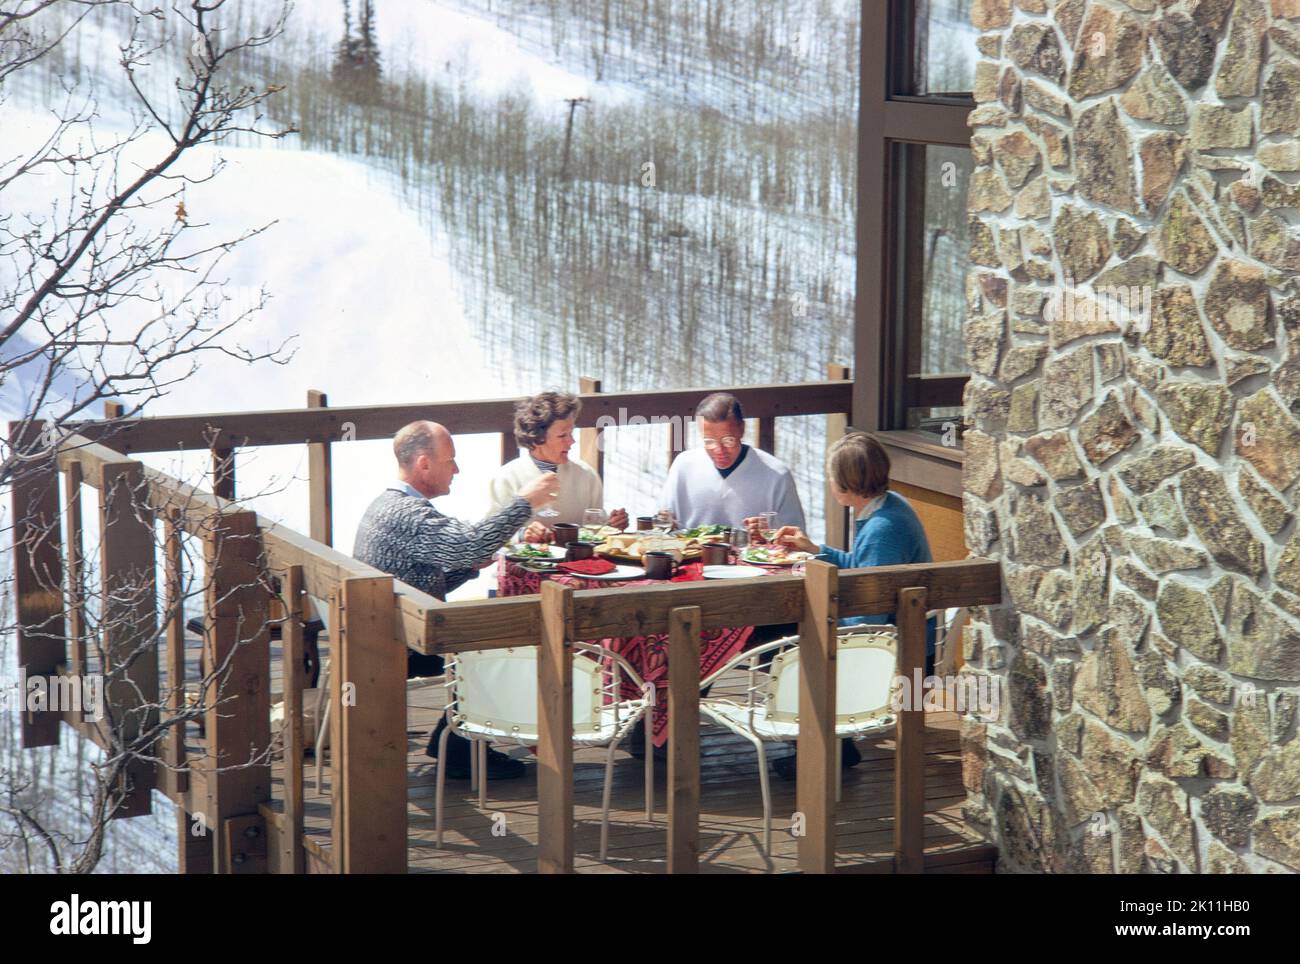 Ex Segretario della Difesa statunitense Robert McNamara con sua moglie Margaret e coppia non identificata che pranzano su balcone, Snowmass Village, Colorado, USA, toni Frissell Collection, Febbraio 1969 Foto Stock